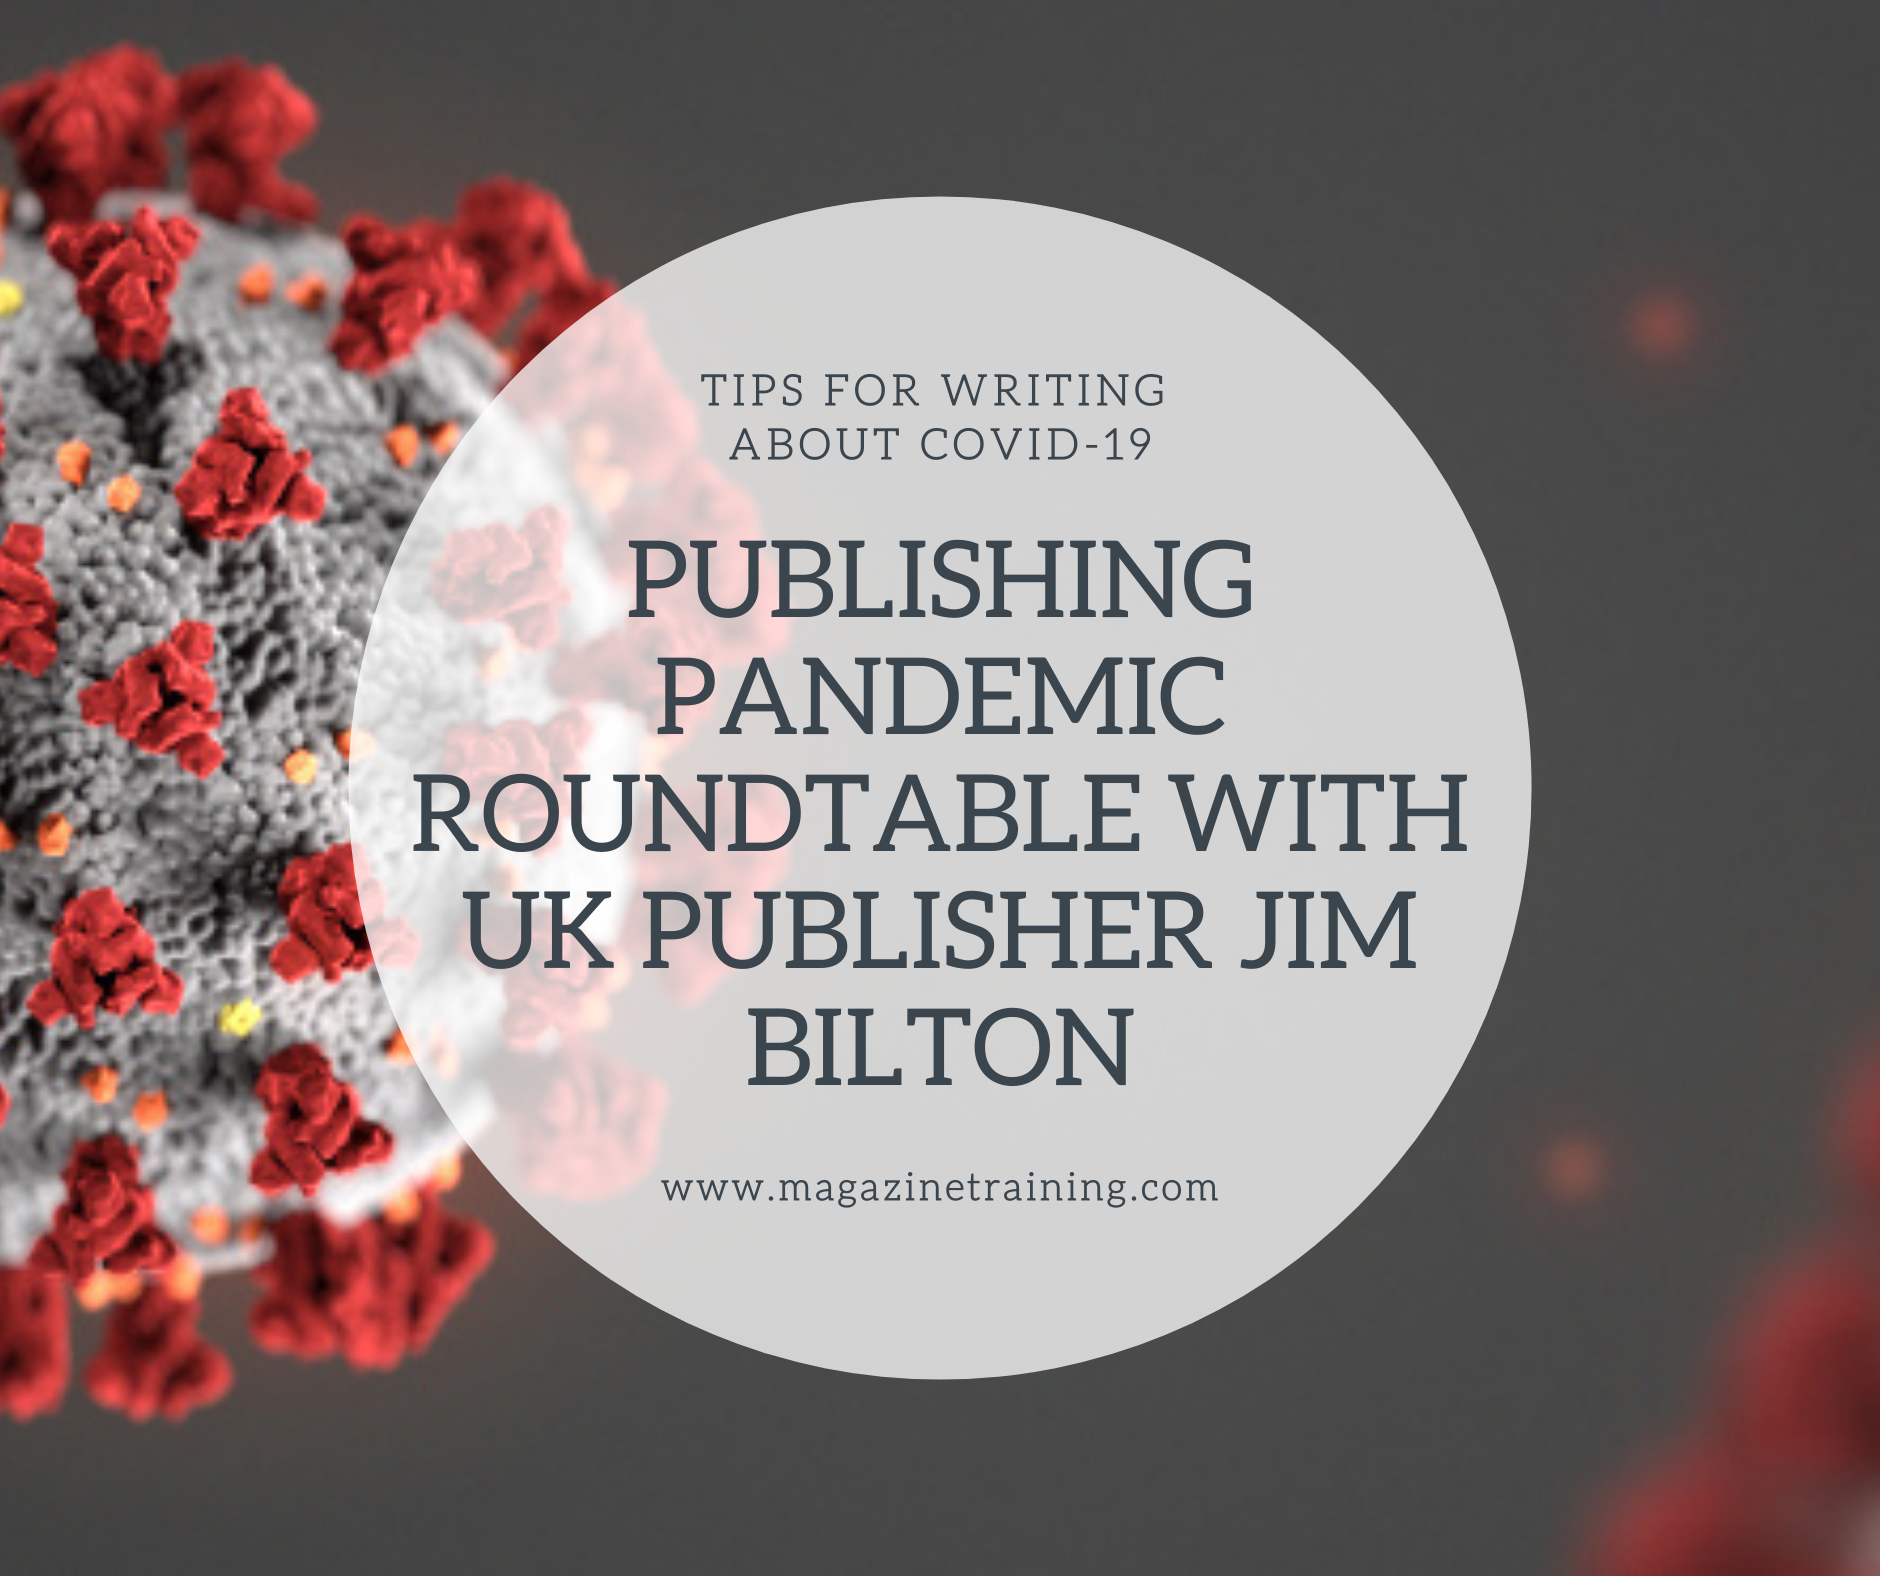 panfemic publishing roundtable